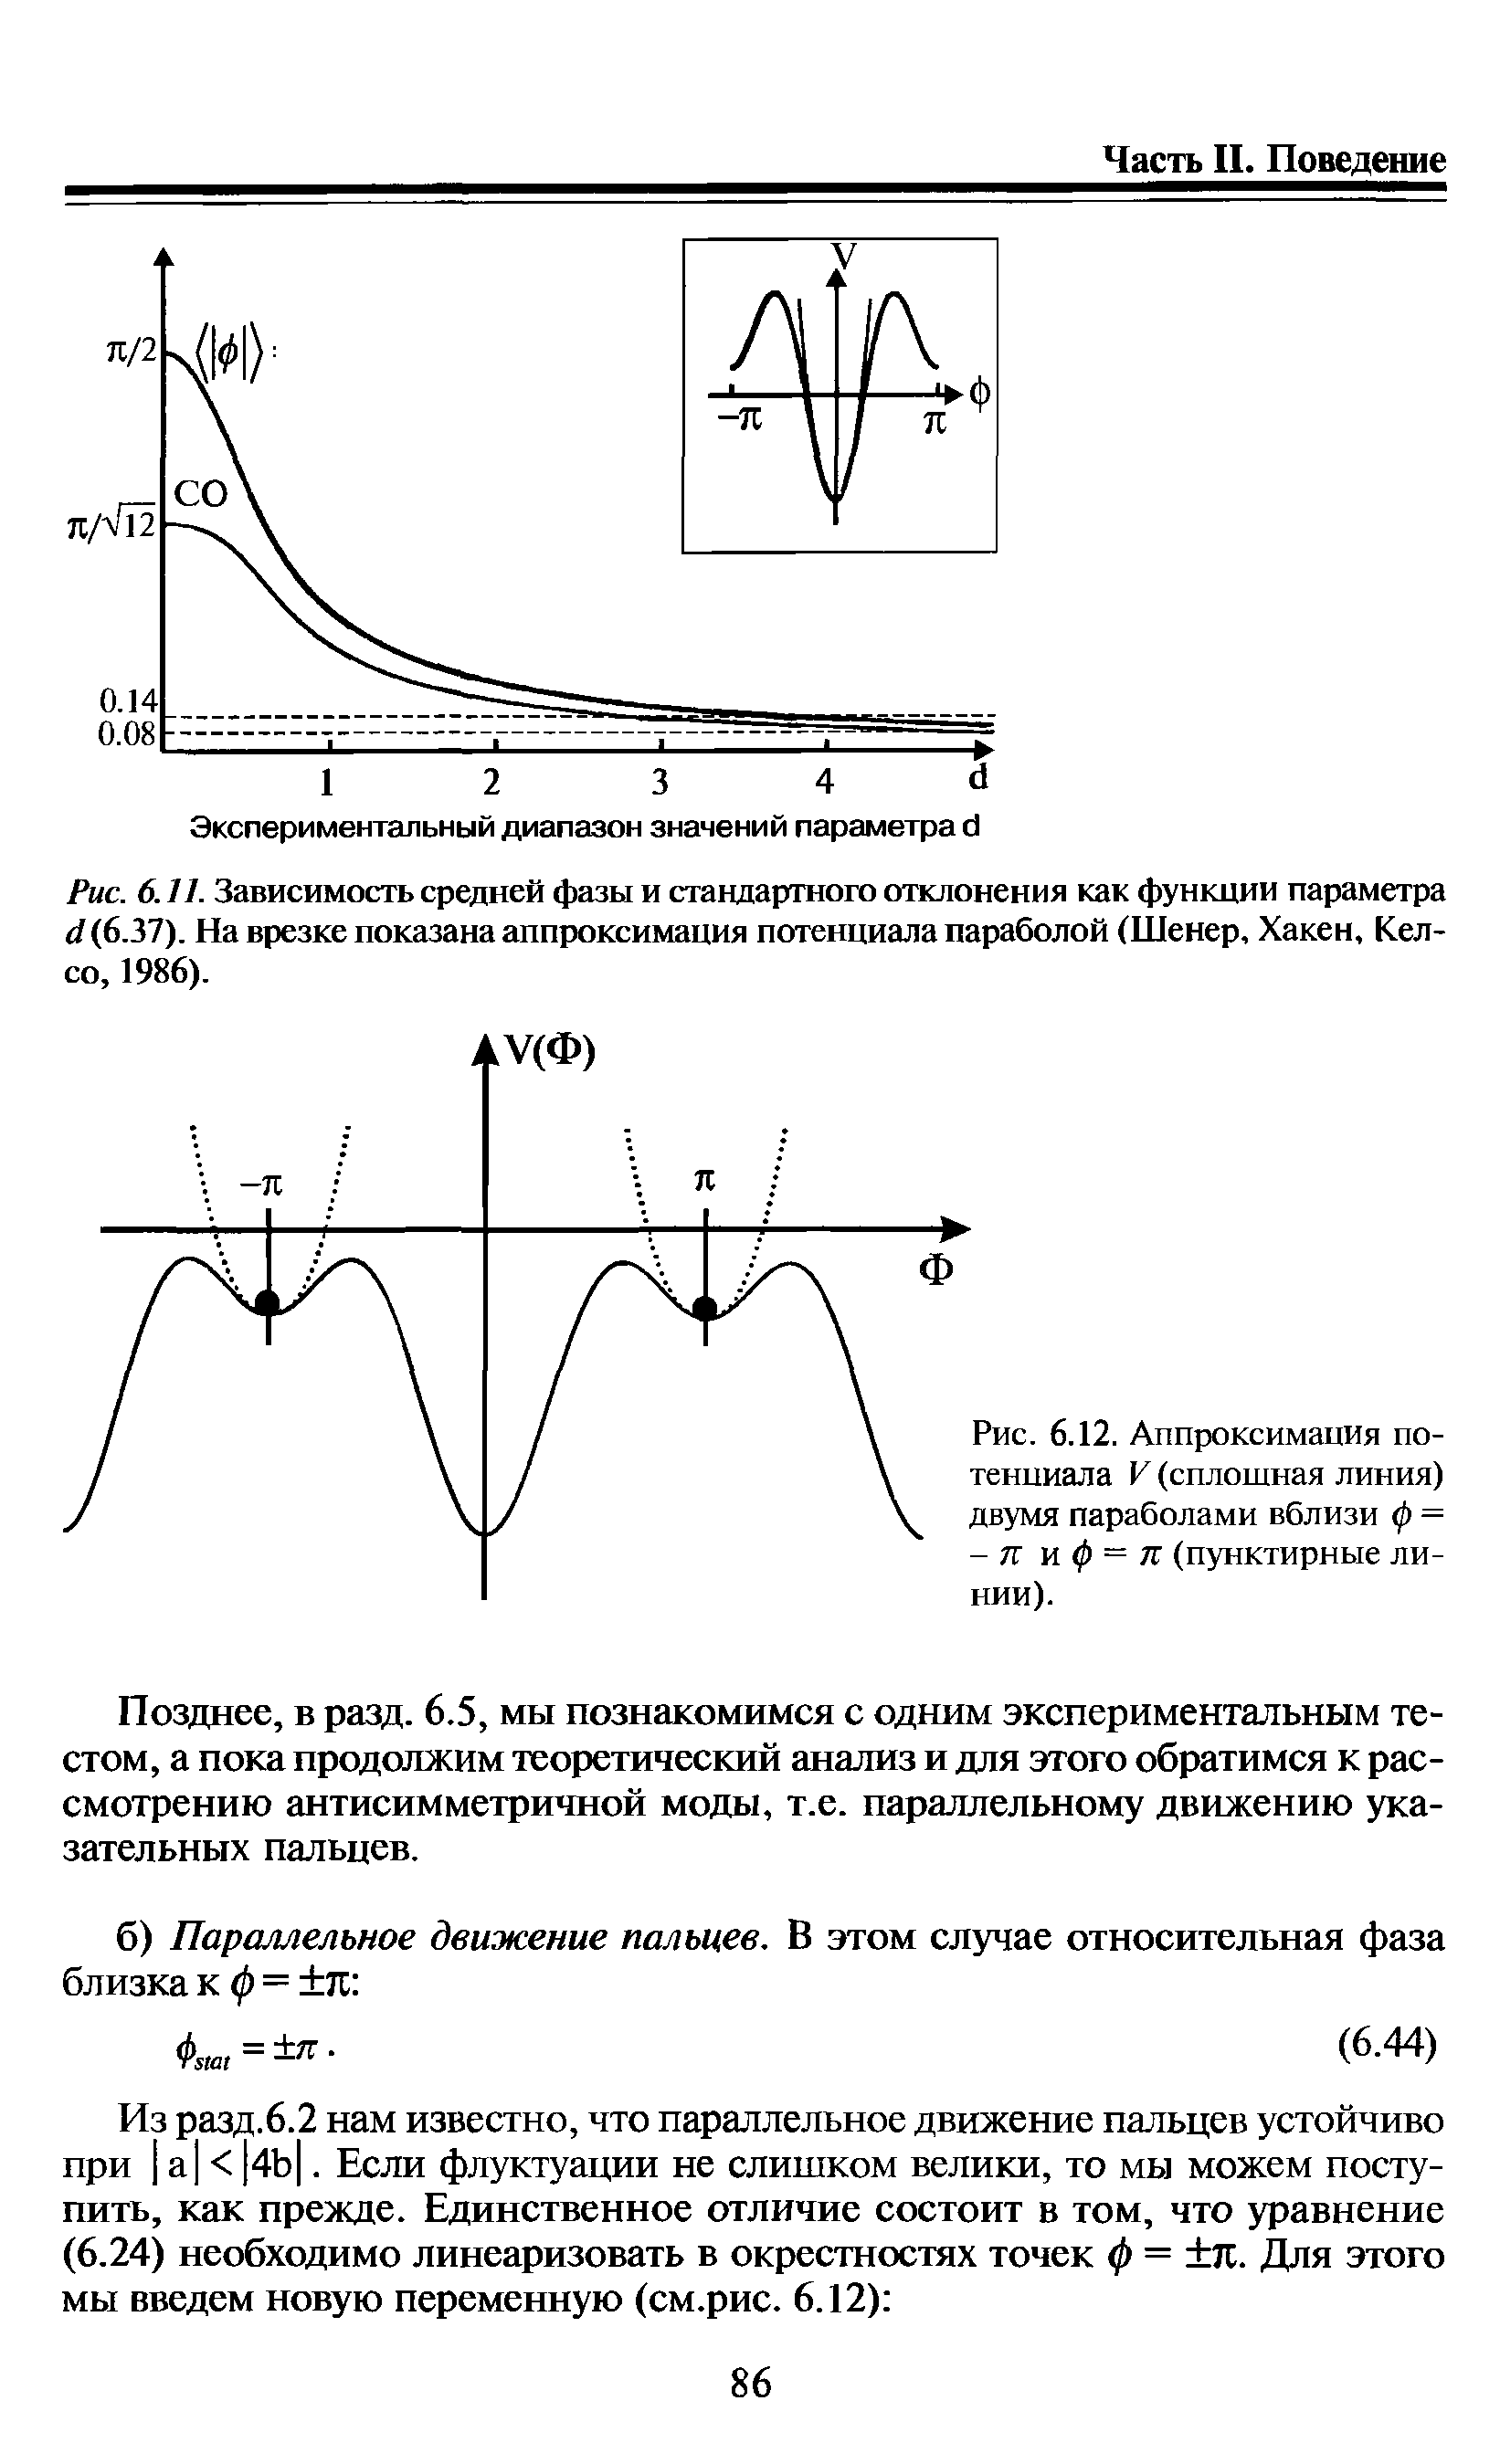 Рис. 6.11. Зависимость средней фазы и стандартного отклонения как функции параметра (I (637). На врезке показана аппроксимация потенциала параболой (Шенер, Хакен, Келсо, 1986).